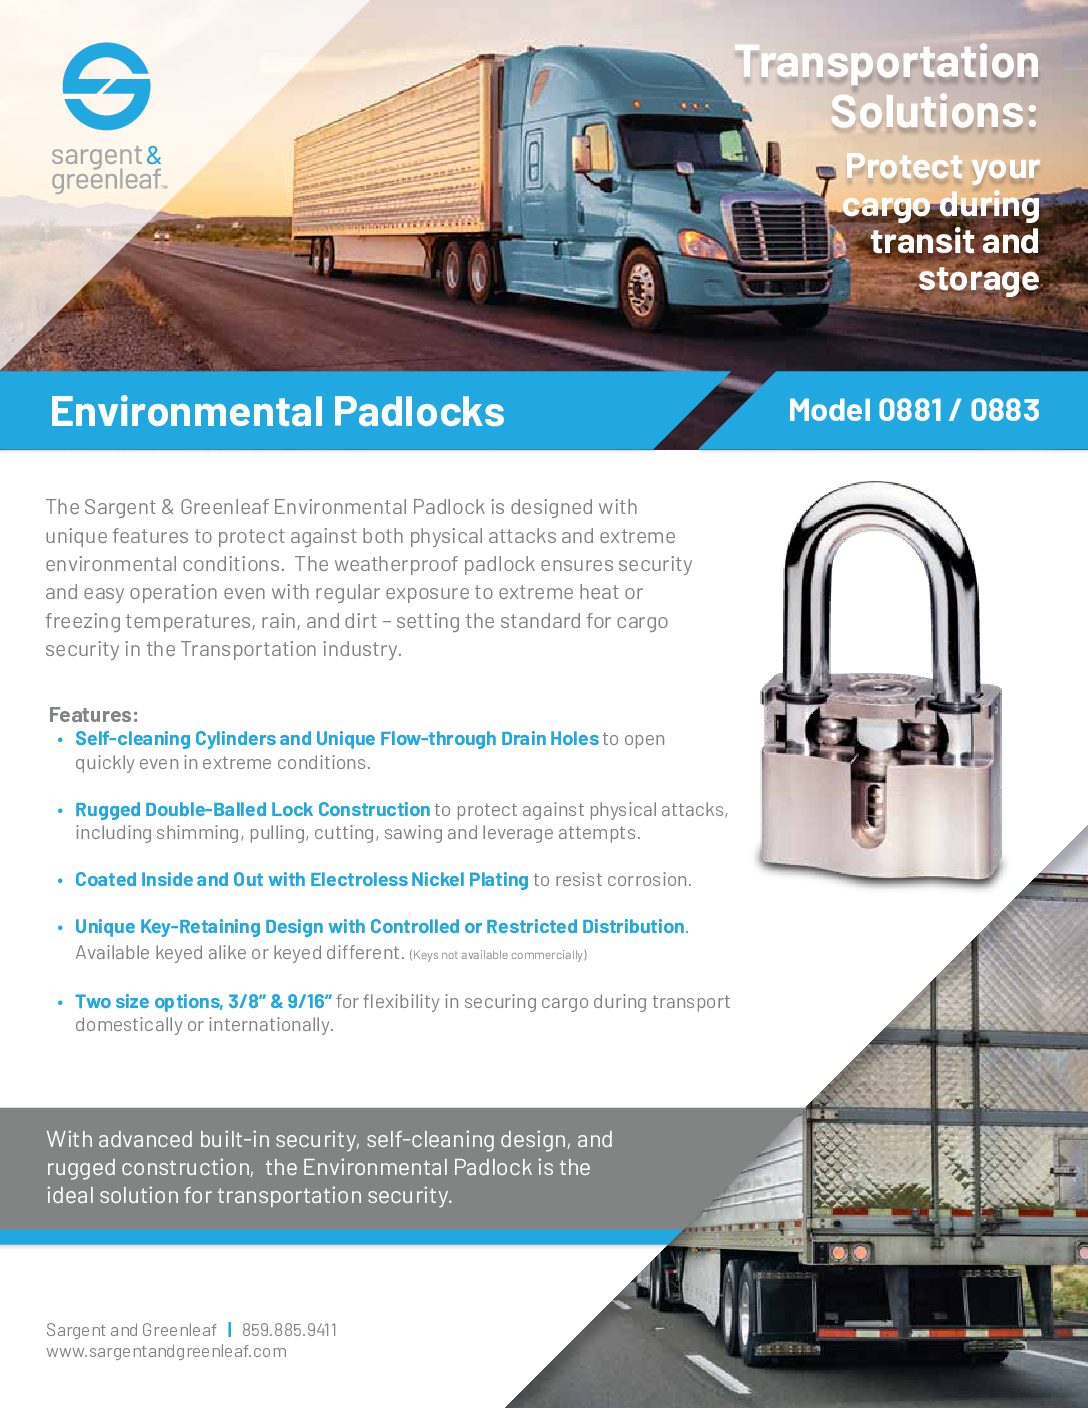 Environmental Padlock - Transportation